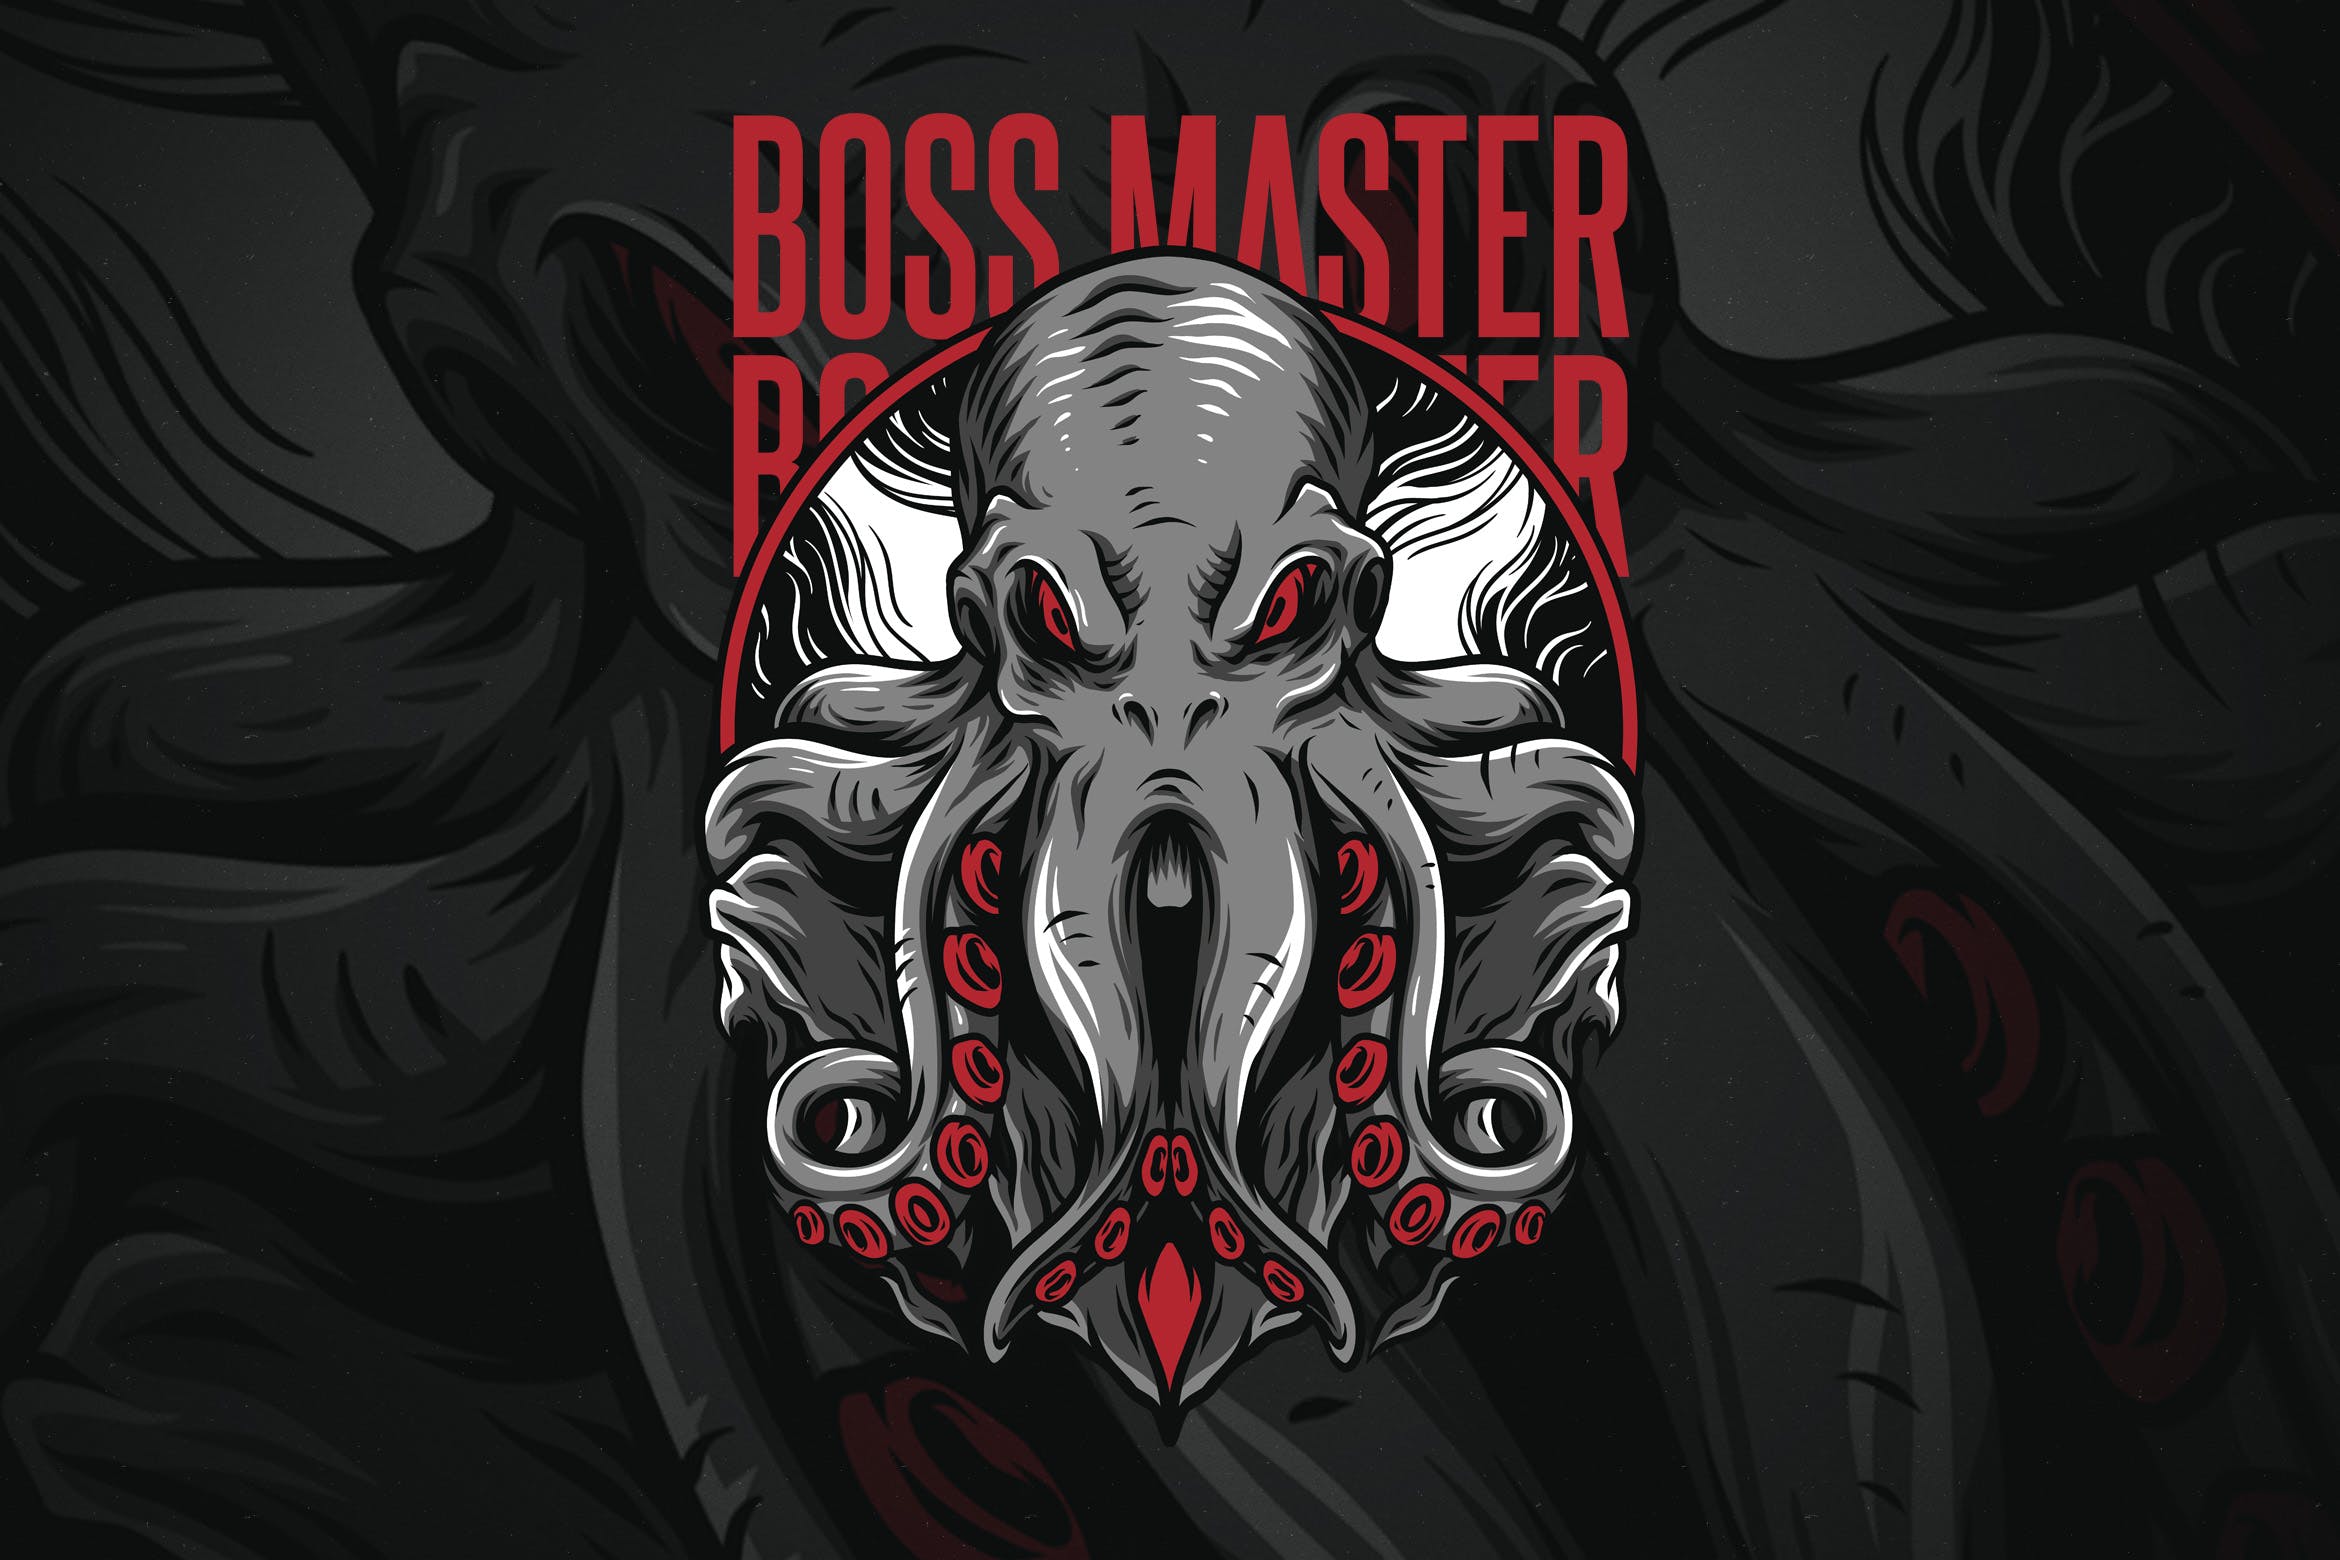 章鱼老大潮牌T恤印花图案第一素材精选设计素材 Boss Master插图